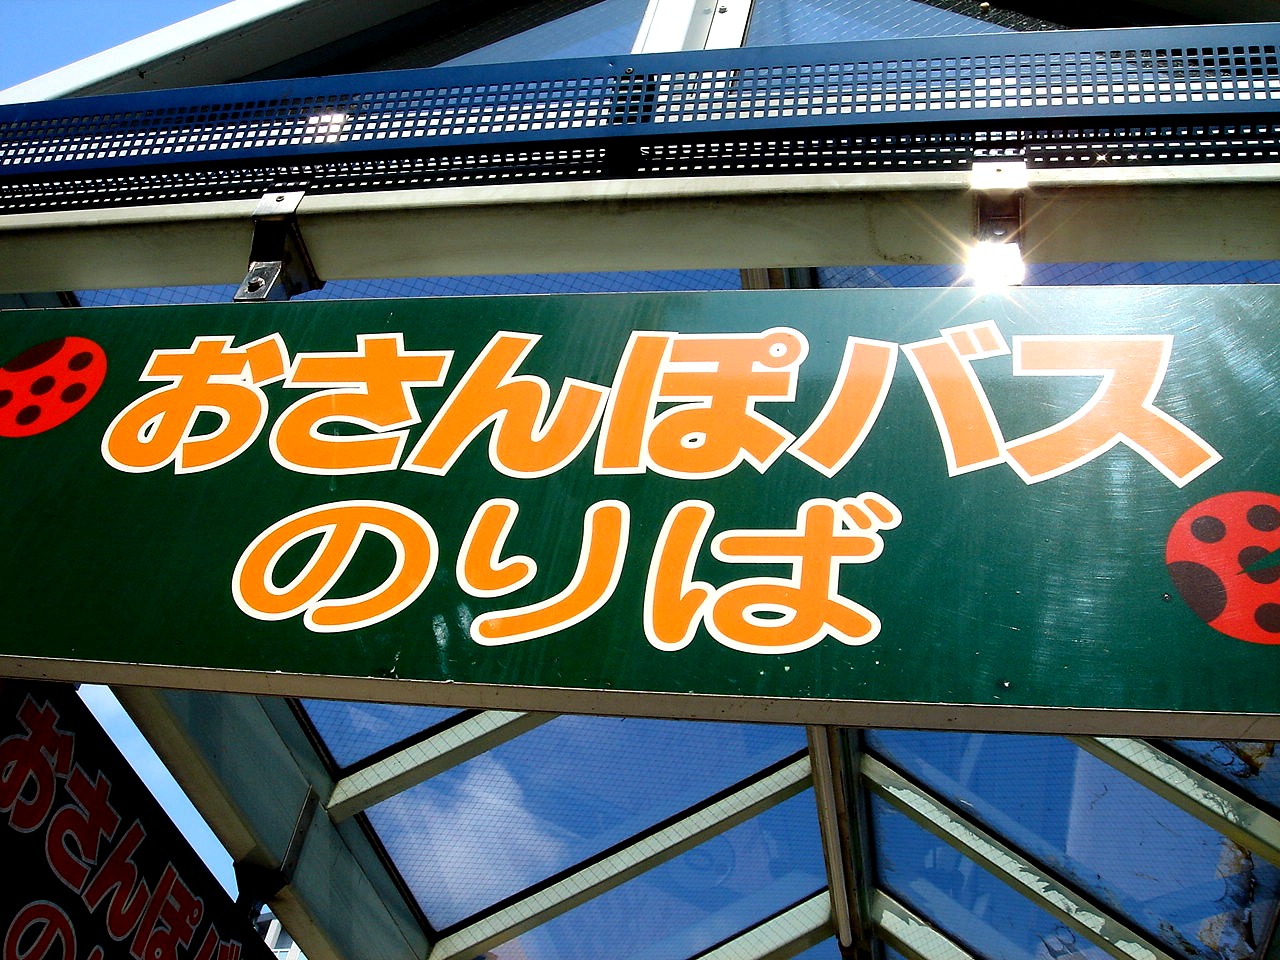 ビビット07part1 おさんぽバス舞浜線 Livedoor Blog ブログ